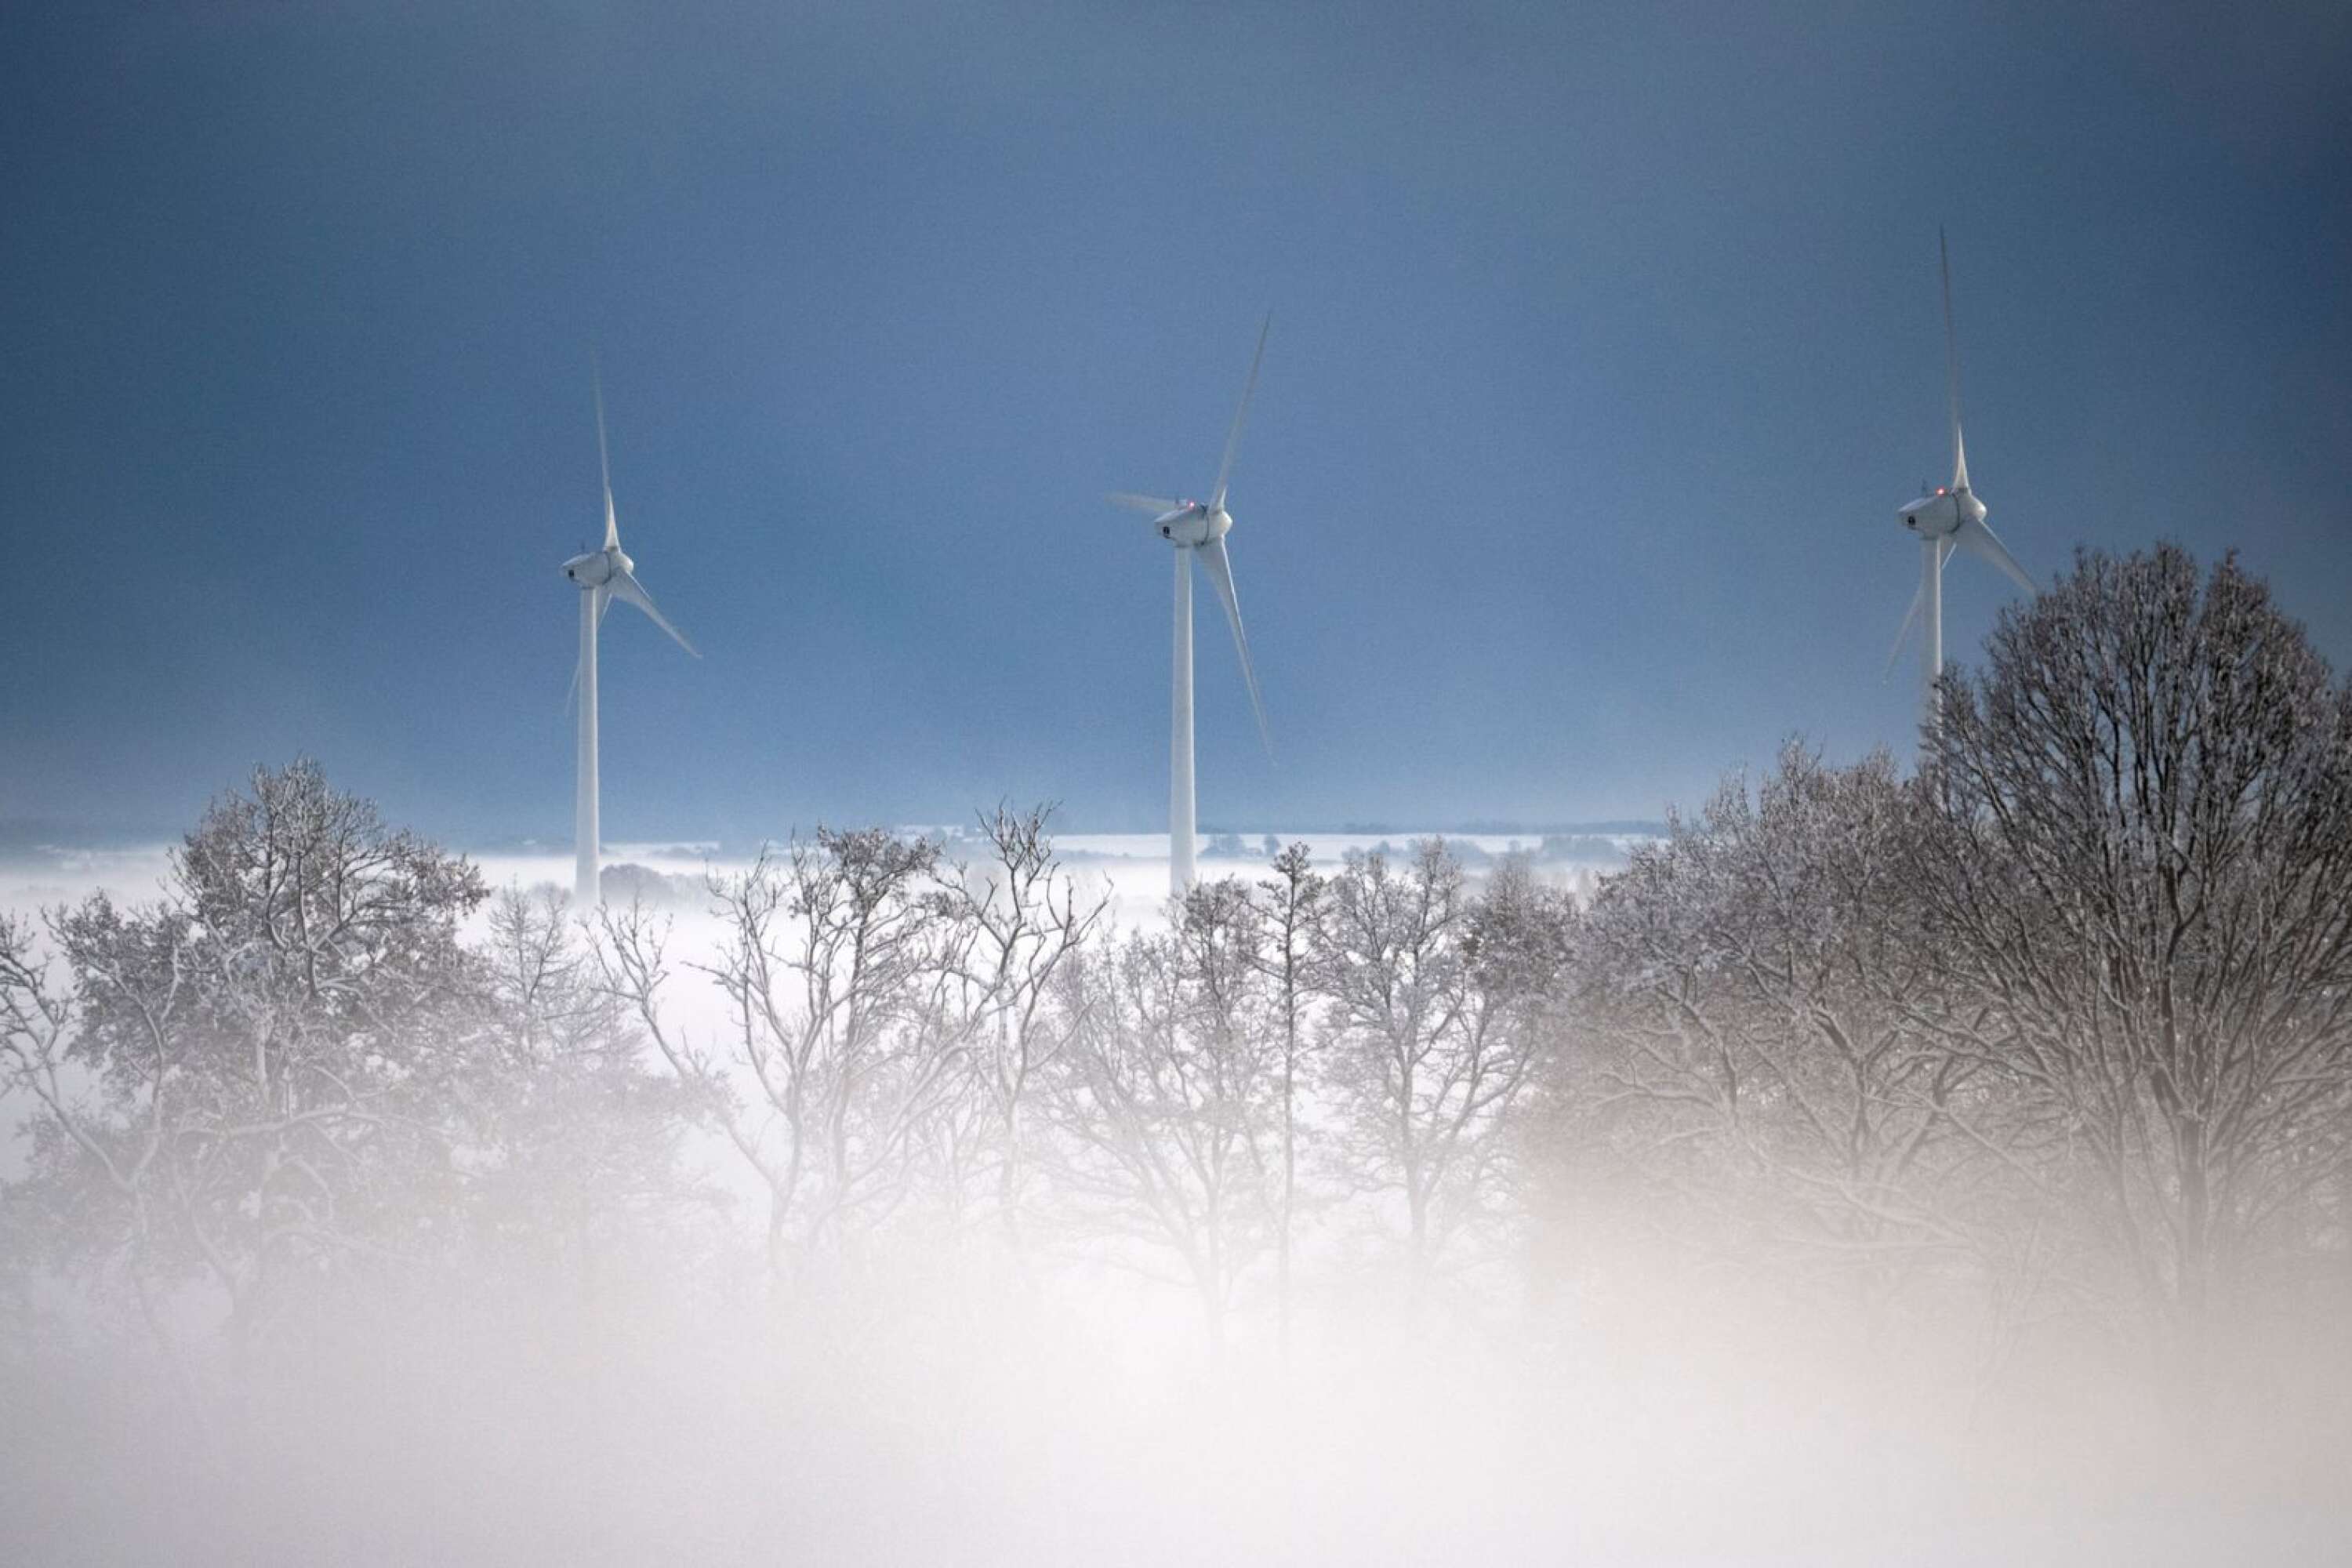 Vindkraft är en energikälla som skulle kunna bidra till mer till energiförsörjningen i Sverige. Anders Nilsson tycker att det är dags för Filipstad att utnyttja den vindbruksplan som finns i kommunen.